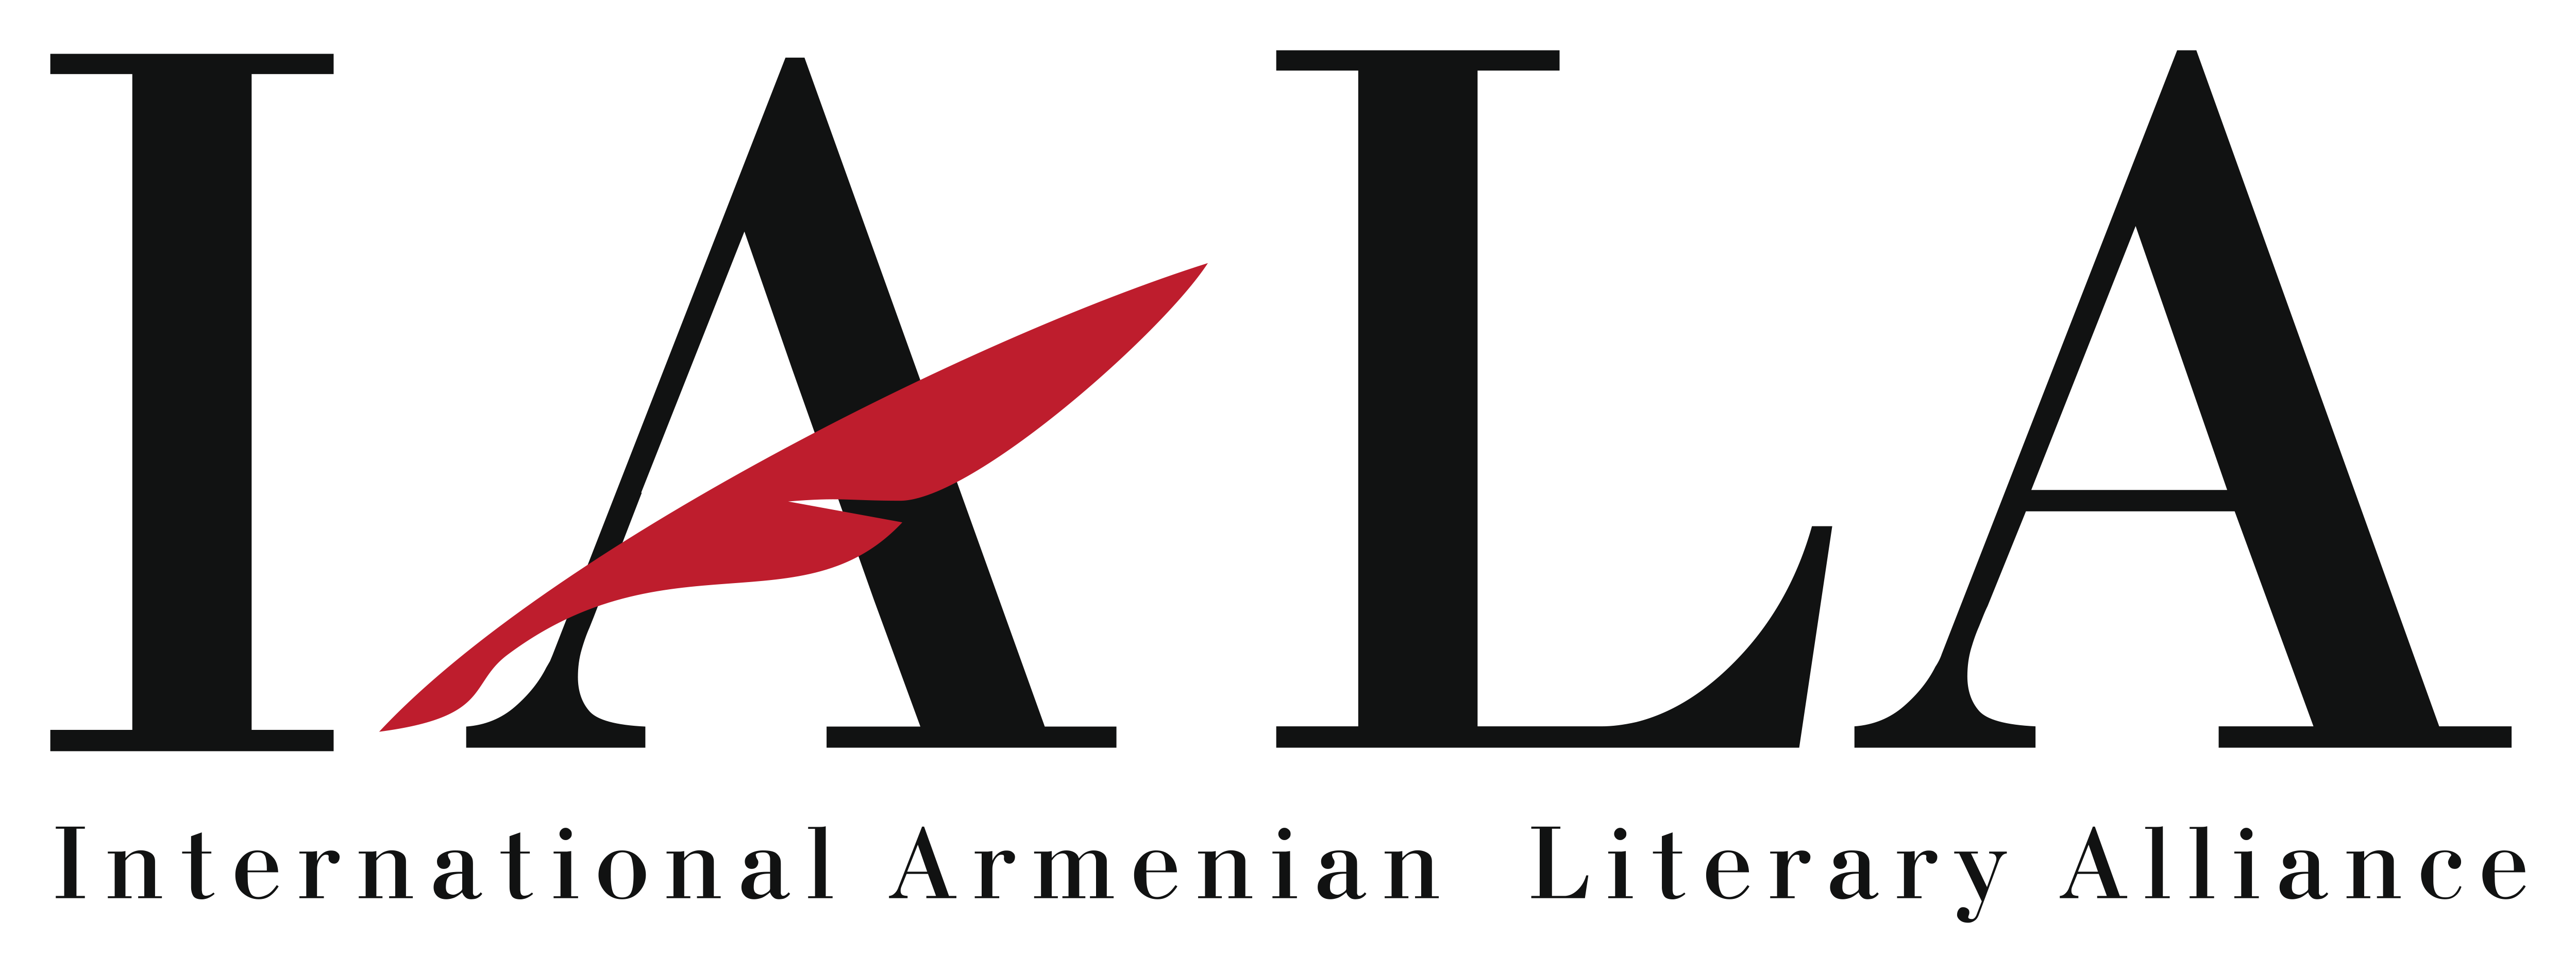 Site ul de intalnire armenian